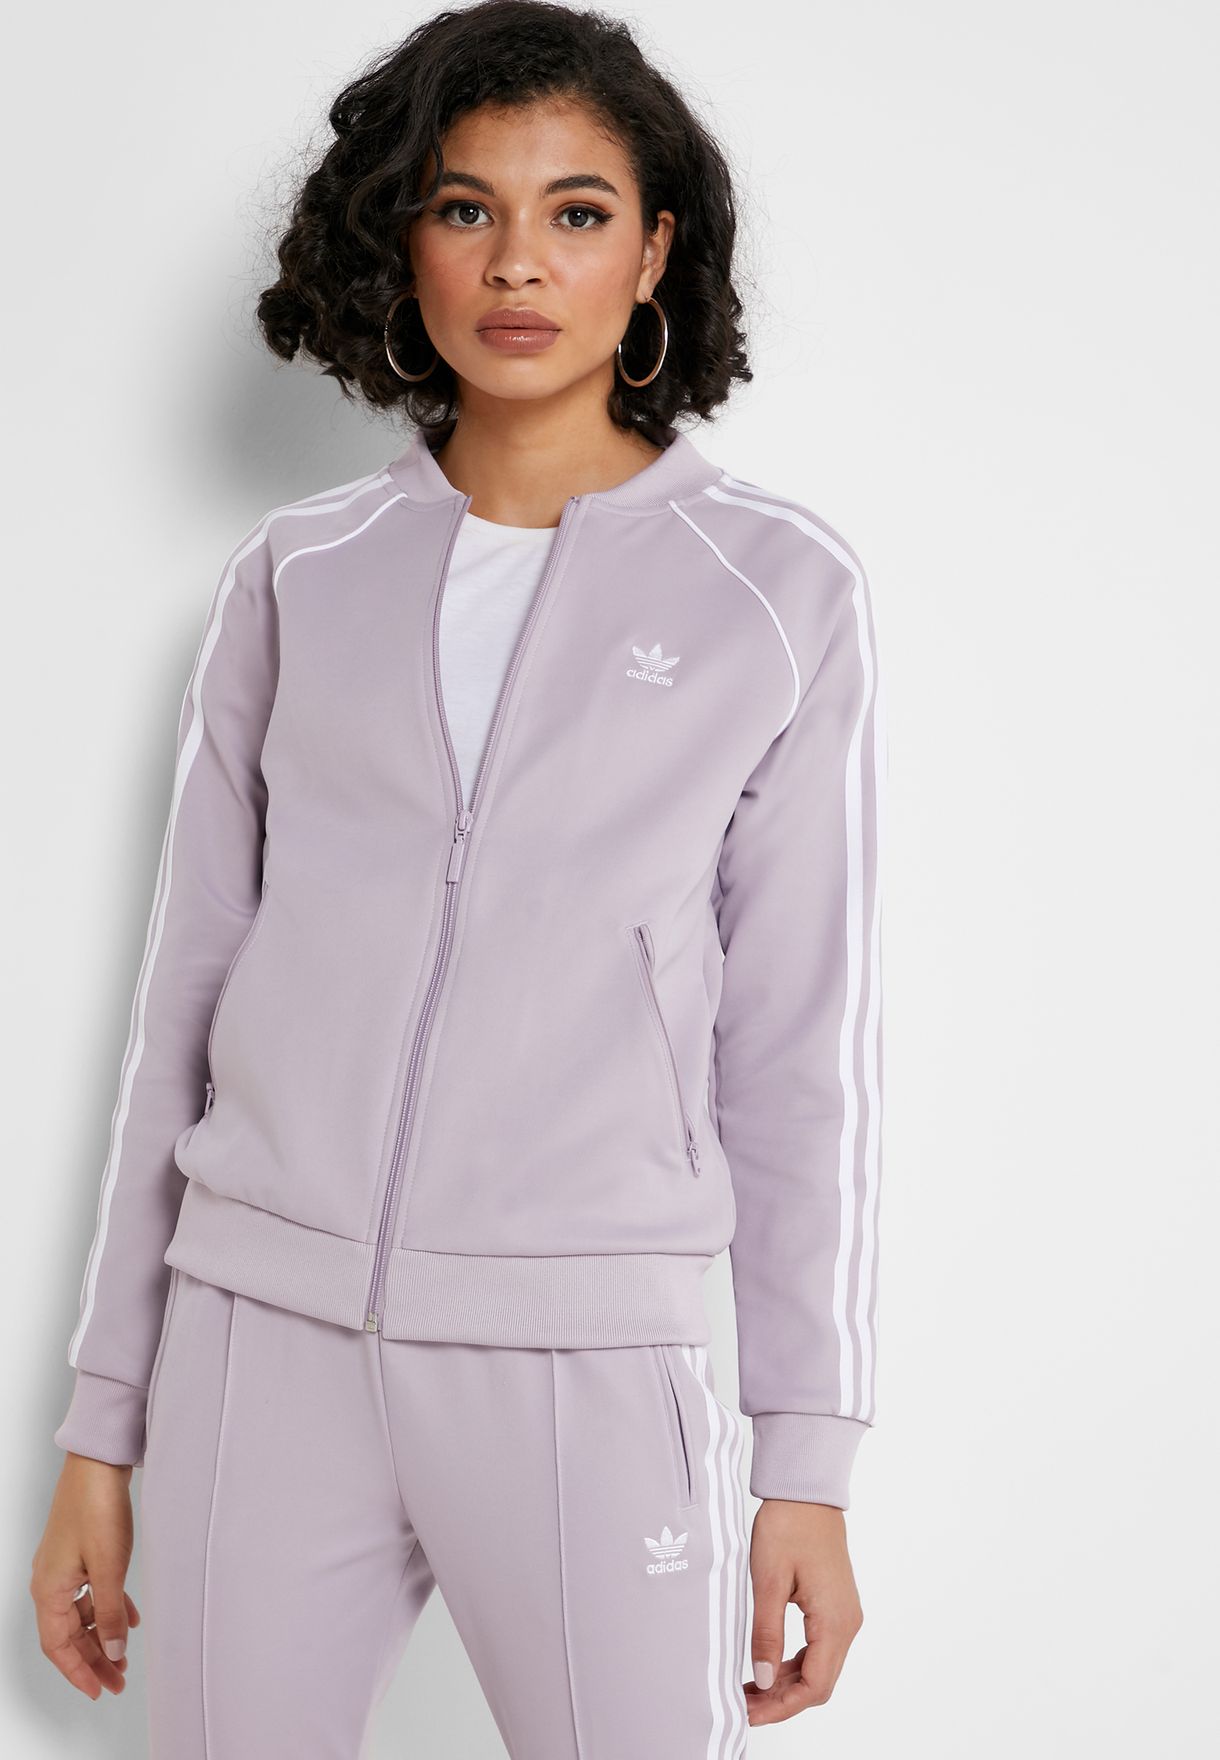 womens purple adidas track jacket